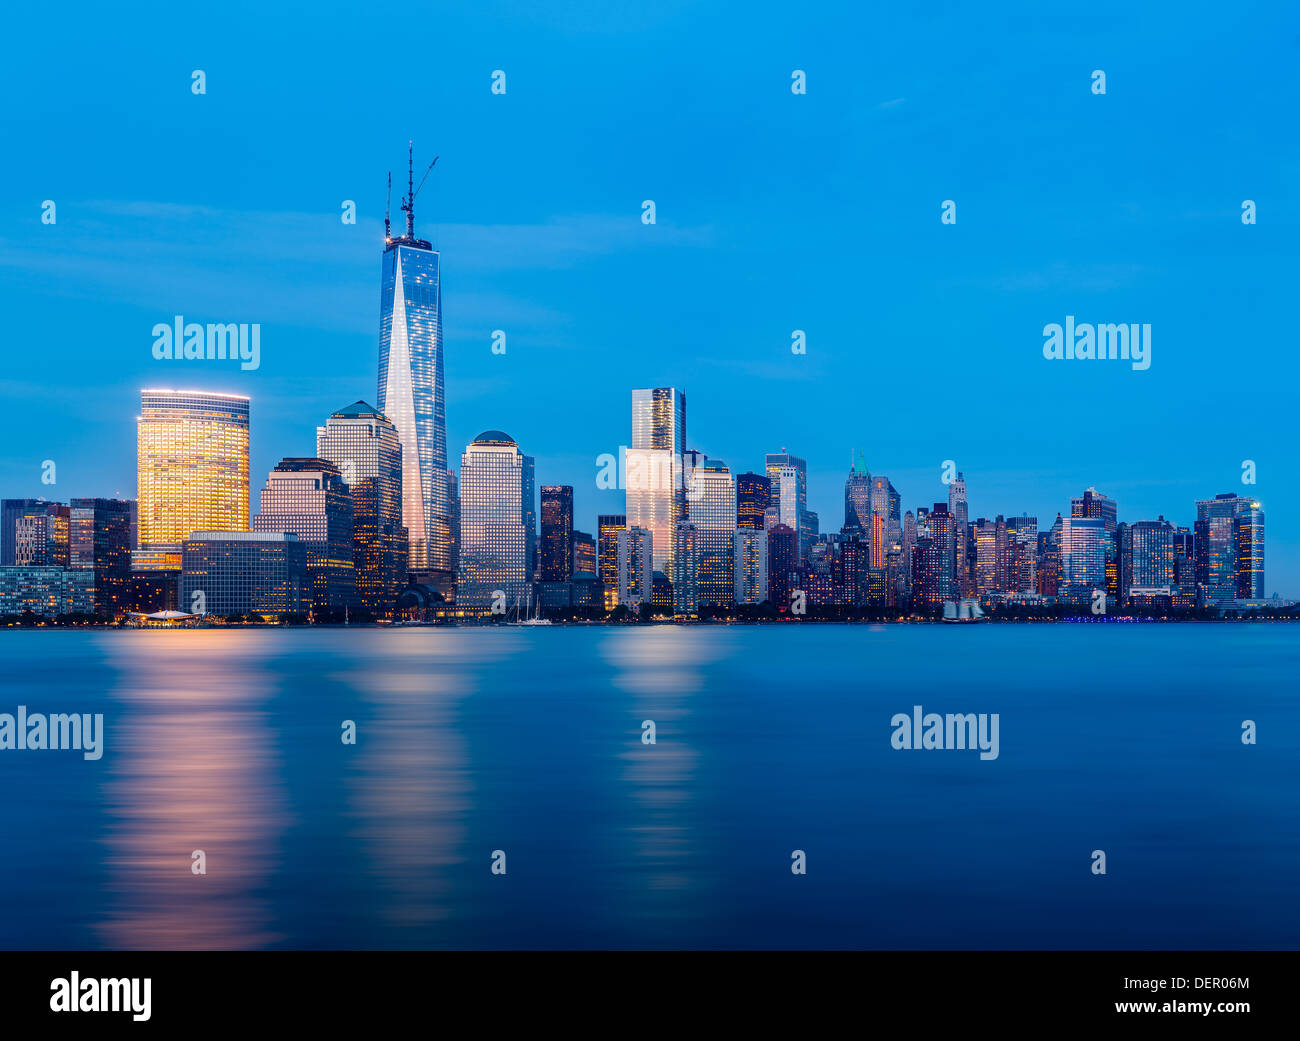 Skyline of New York city across the Hudson River at dusk Stock Photo